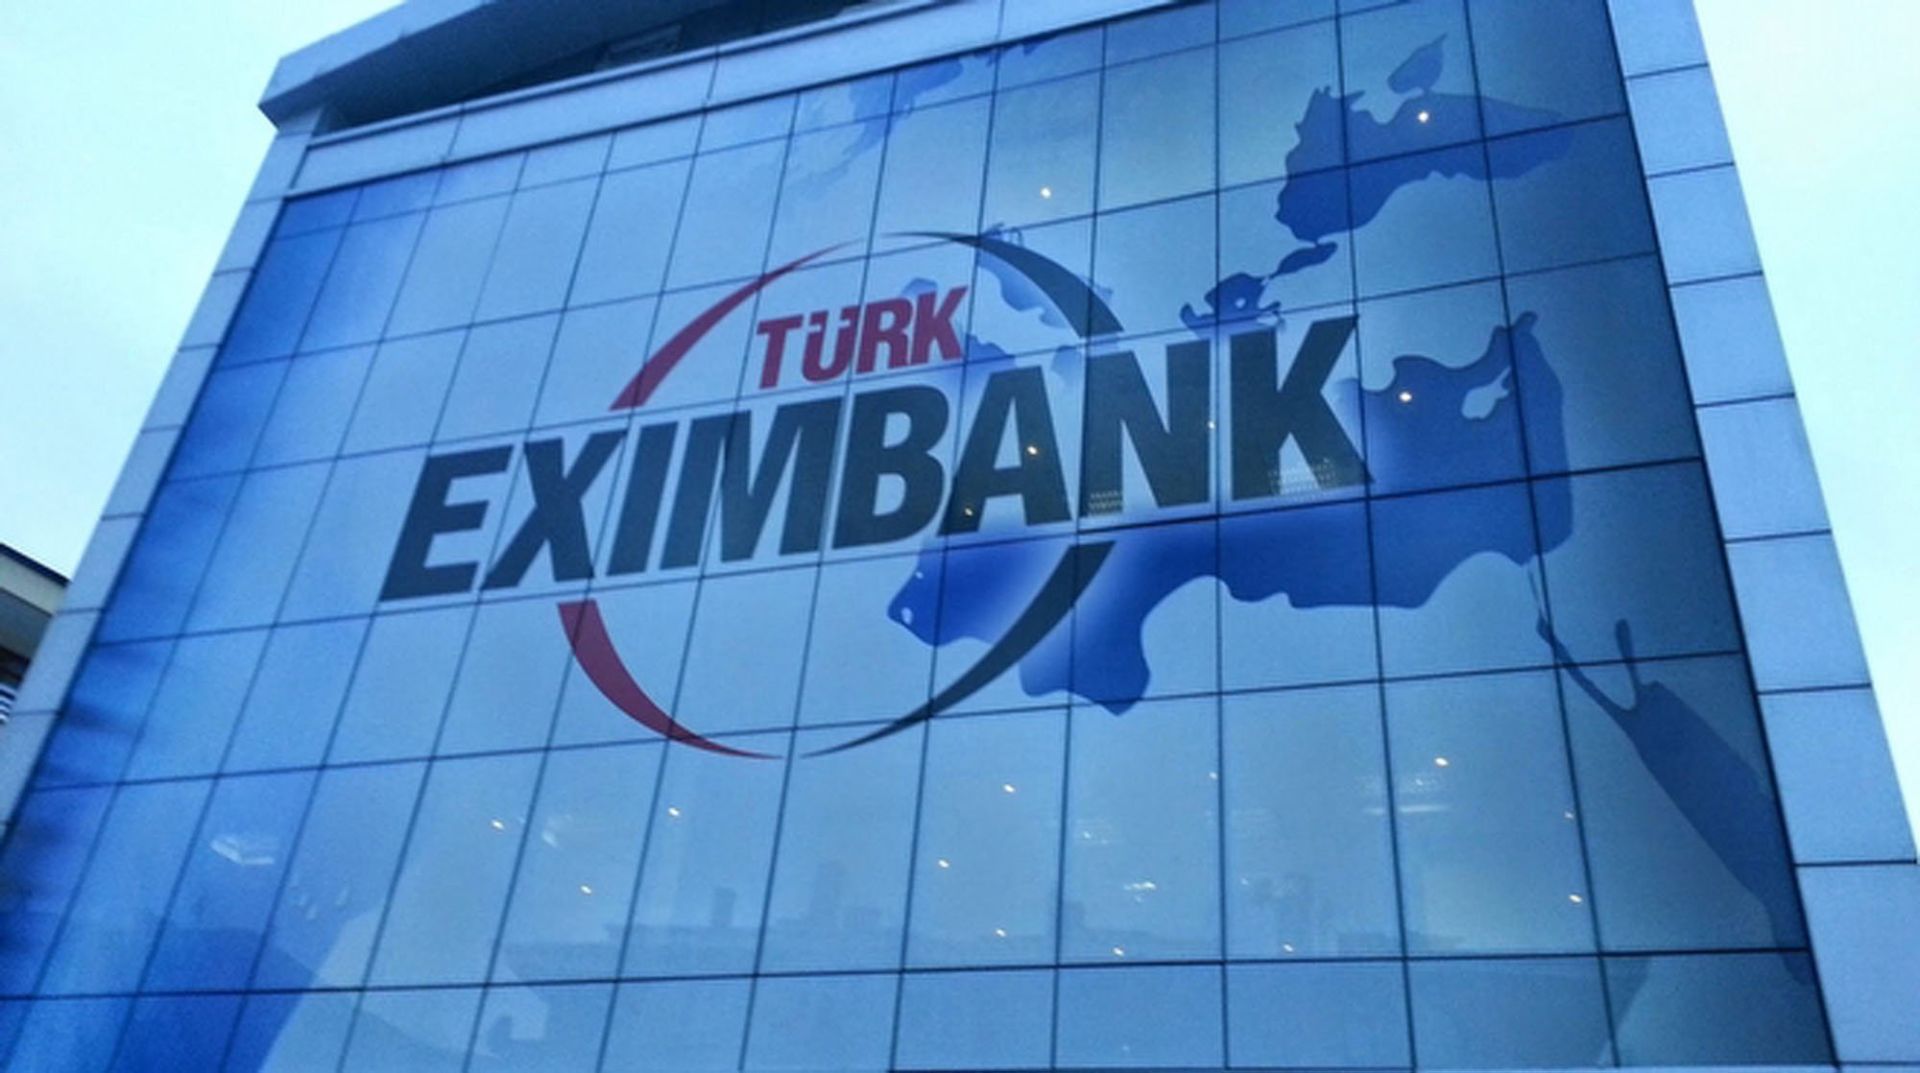 Eximbank md. Eximbank. Turk Exim Bank. Turk Eximbank logo. Eximbank logo.